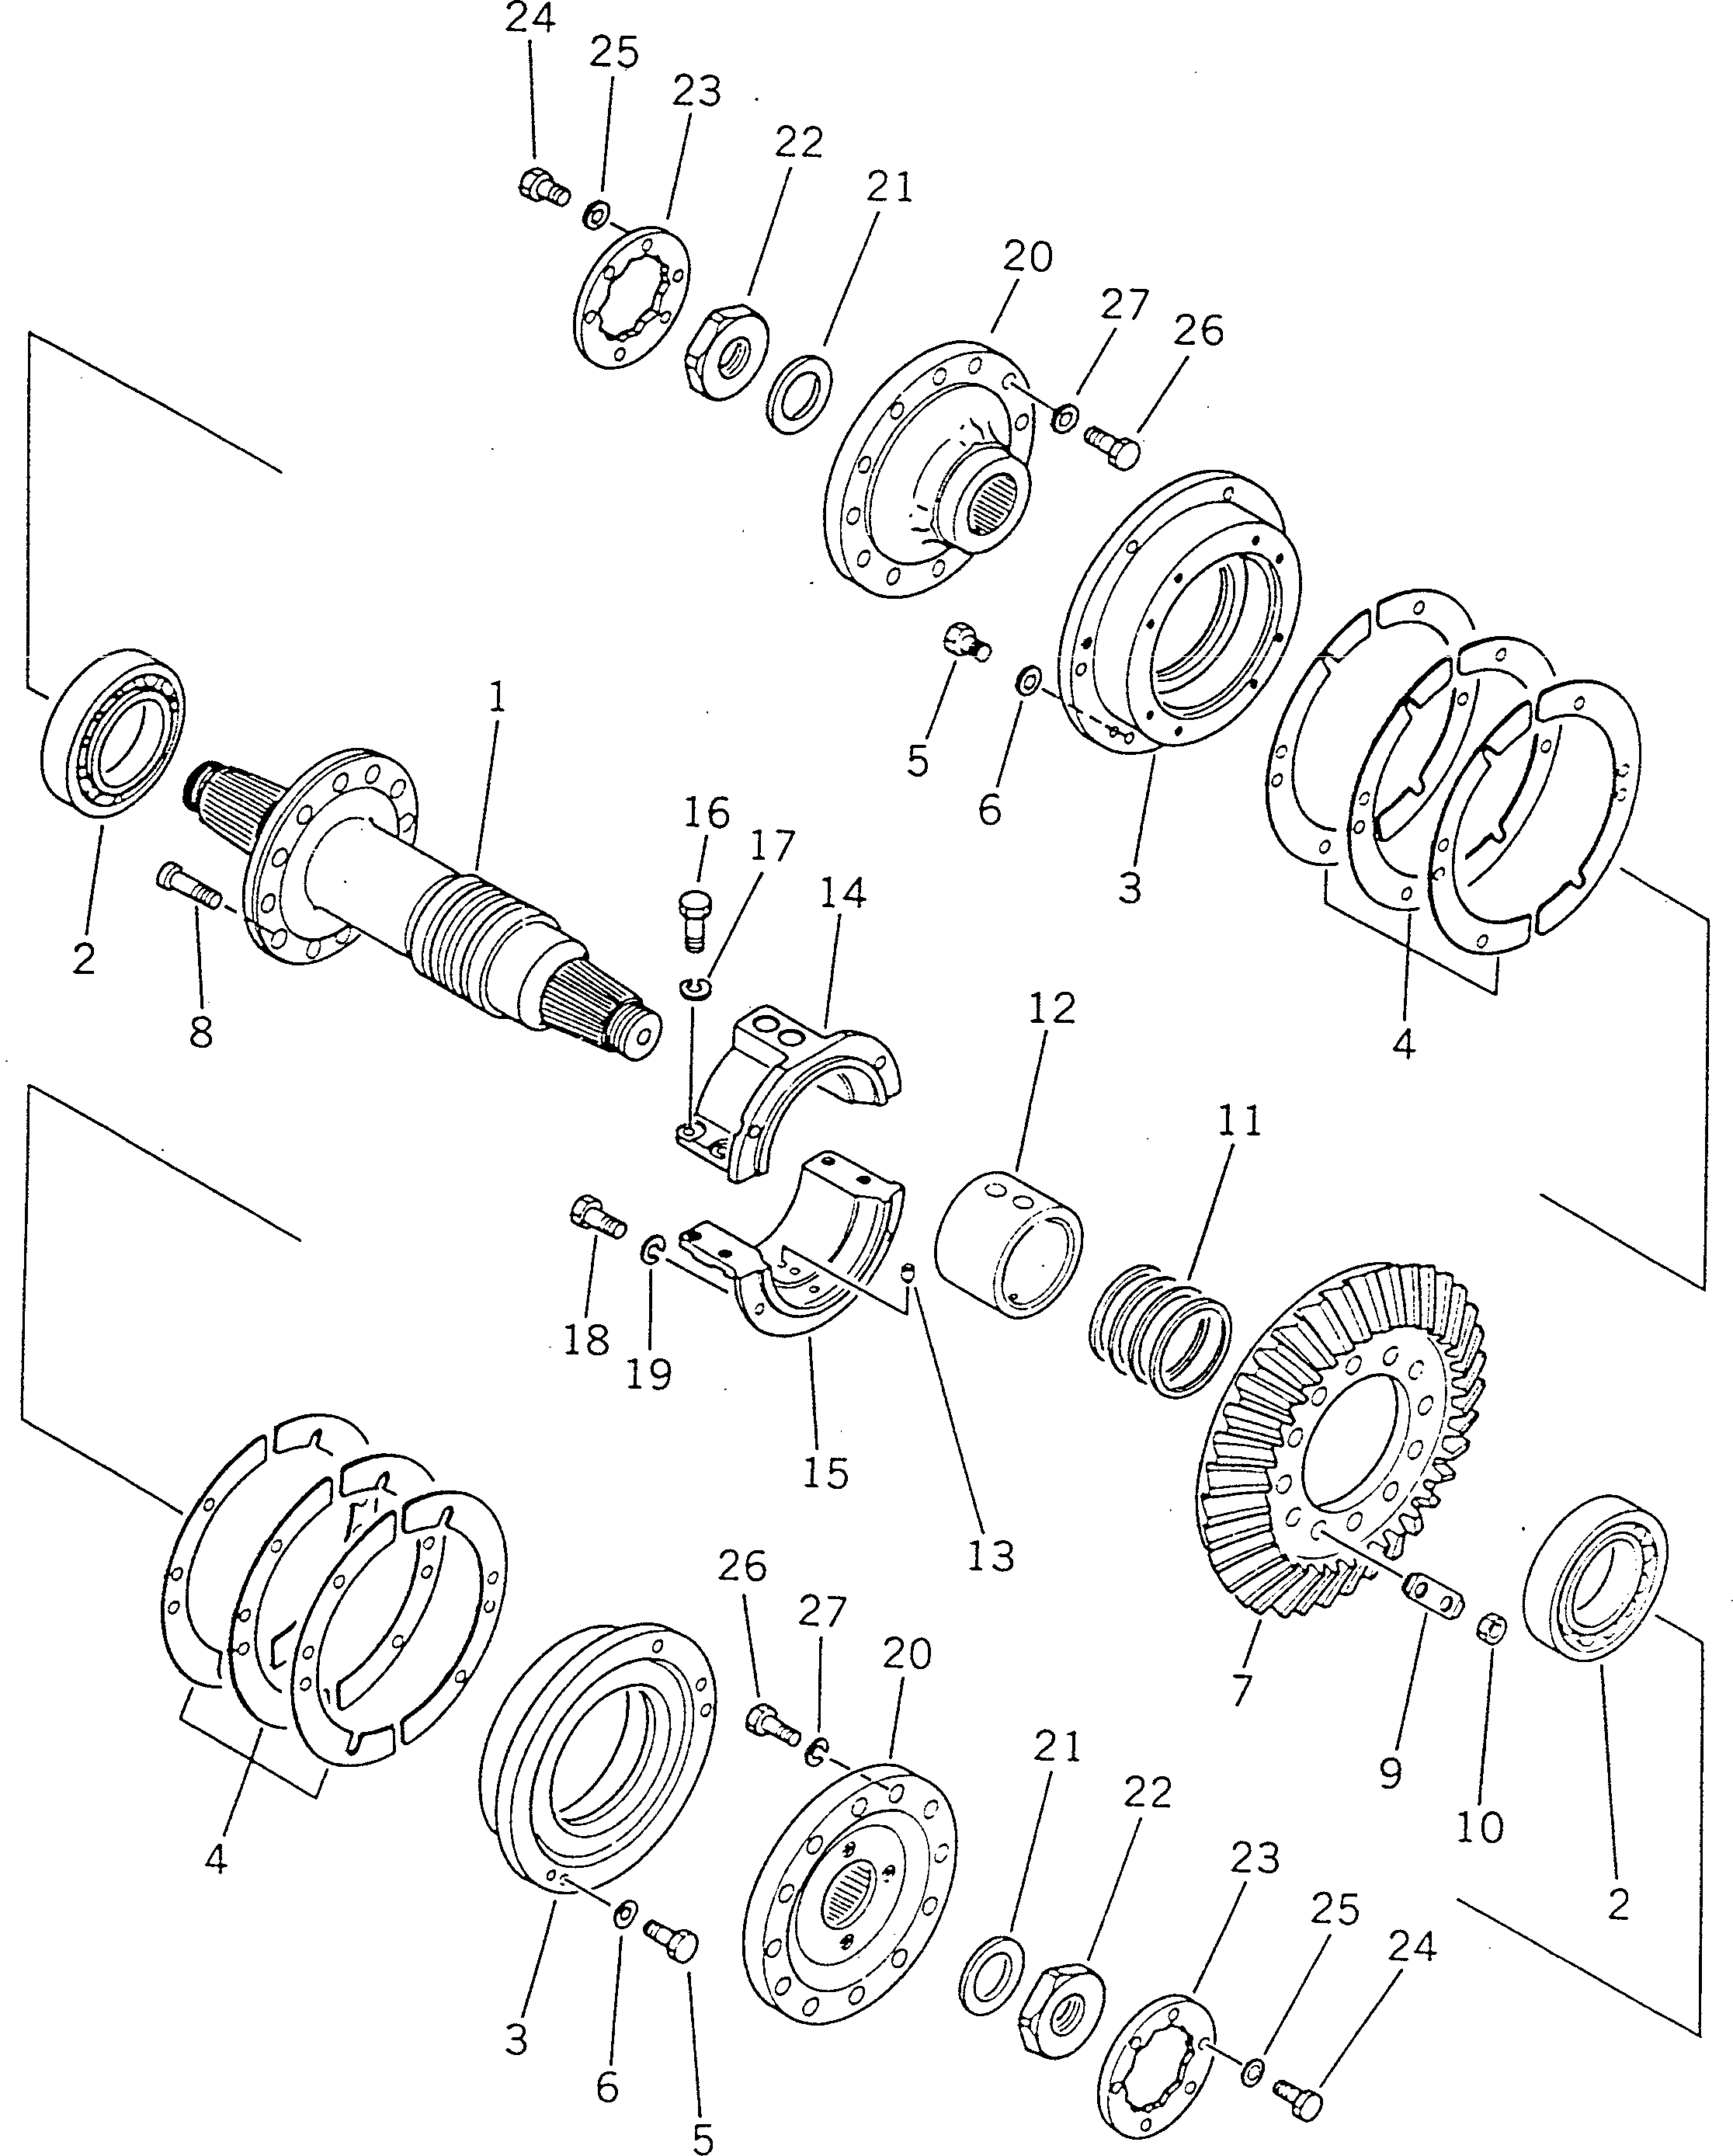 150. BEVEL GEAR AND SHAFT [2611] - Komatsu part D355A-5 S/N 12622-UP [d355a-5c]